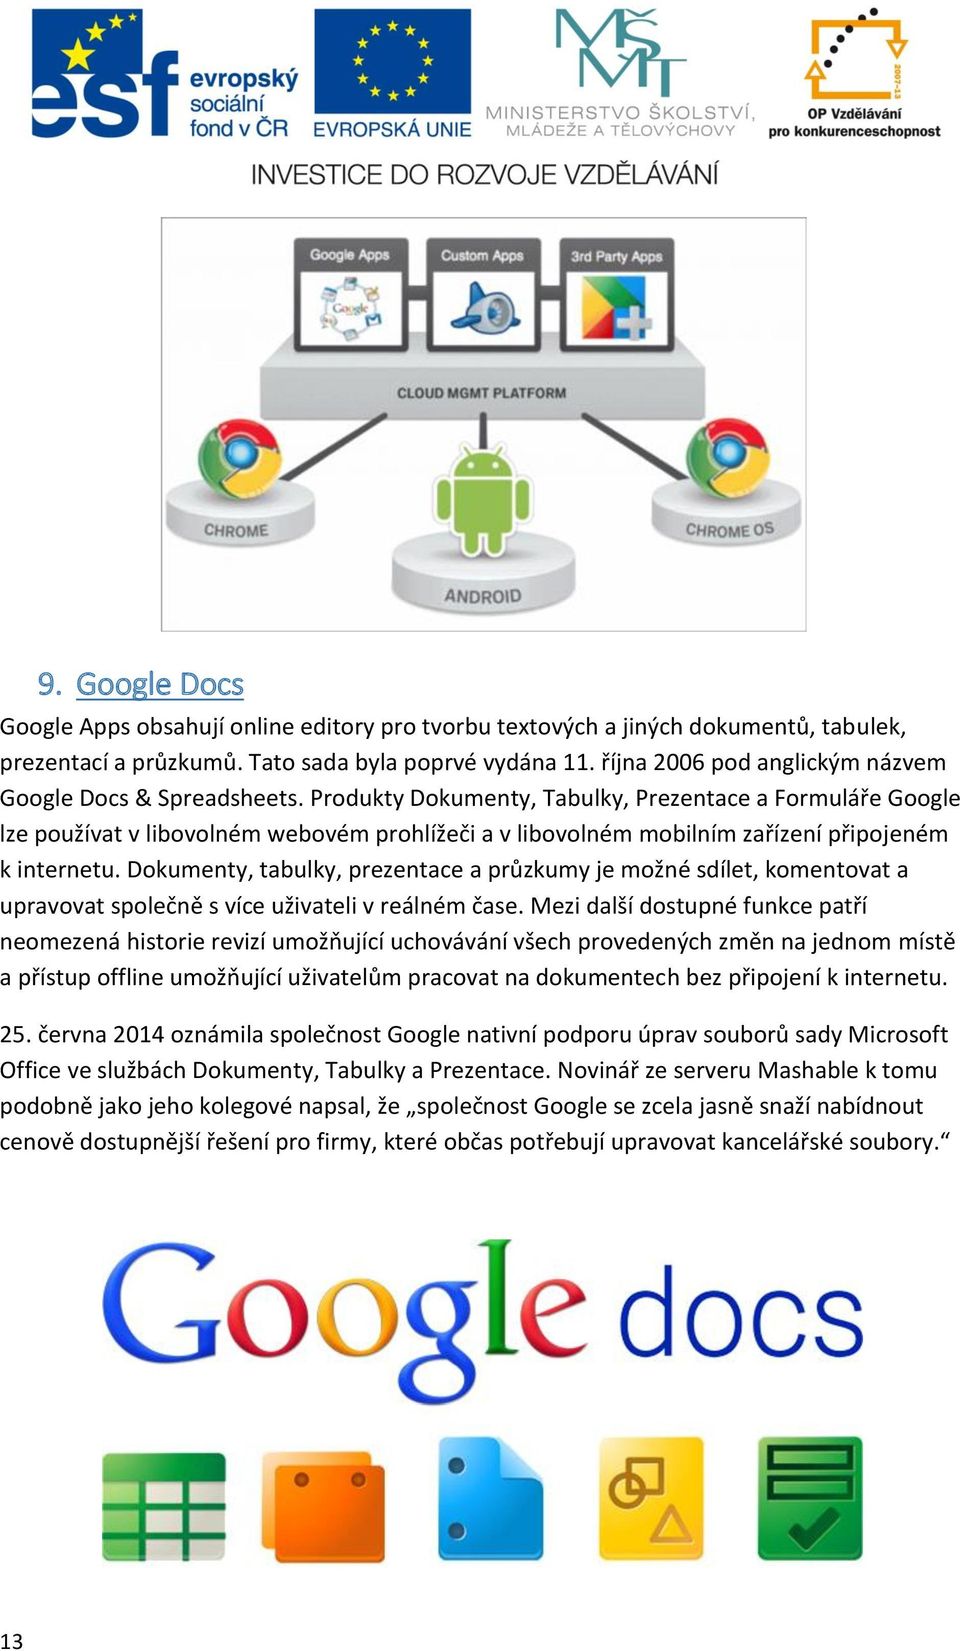 Produkty Dokumenty, Tabulky, Prezentace a Formuláře Google lze používat v libovolném webovém prohlížeči a v libovolném mobilním zařízení připojeném k internetu.